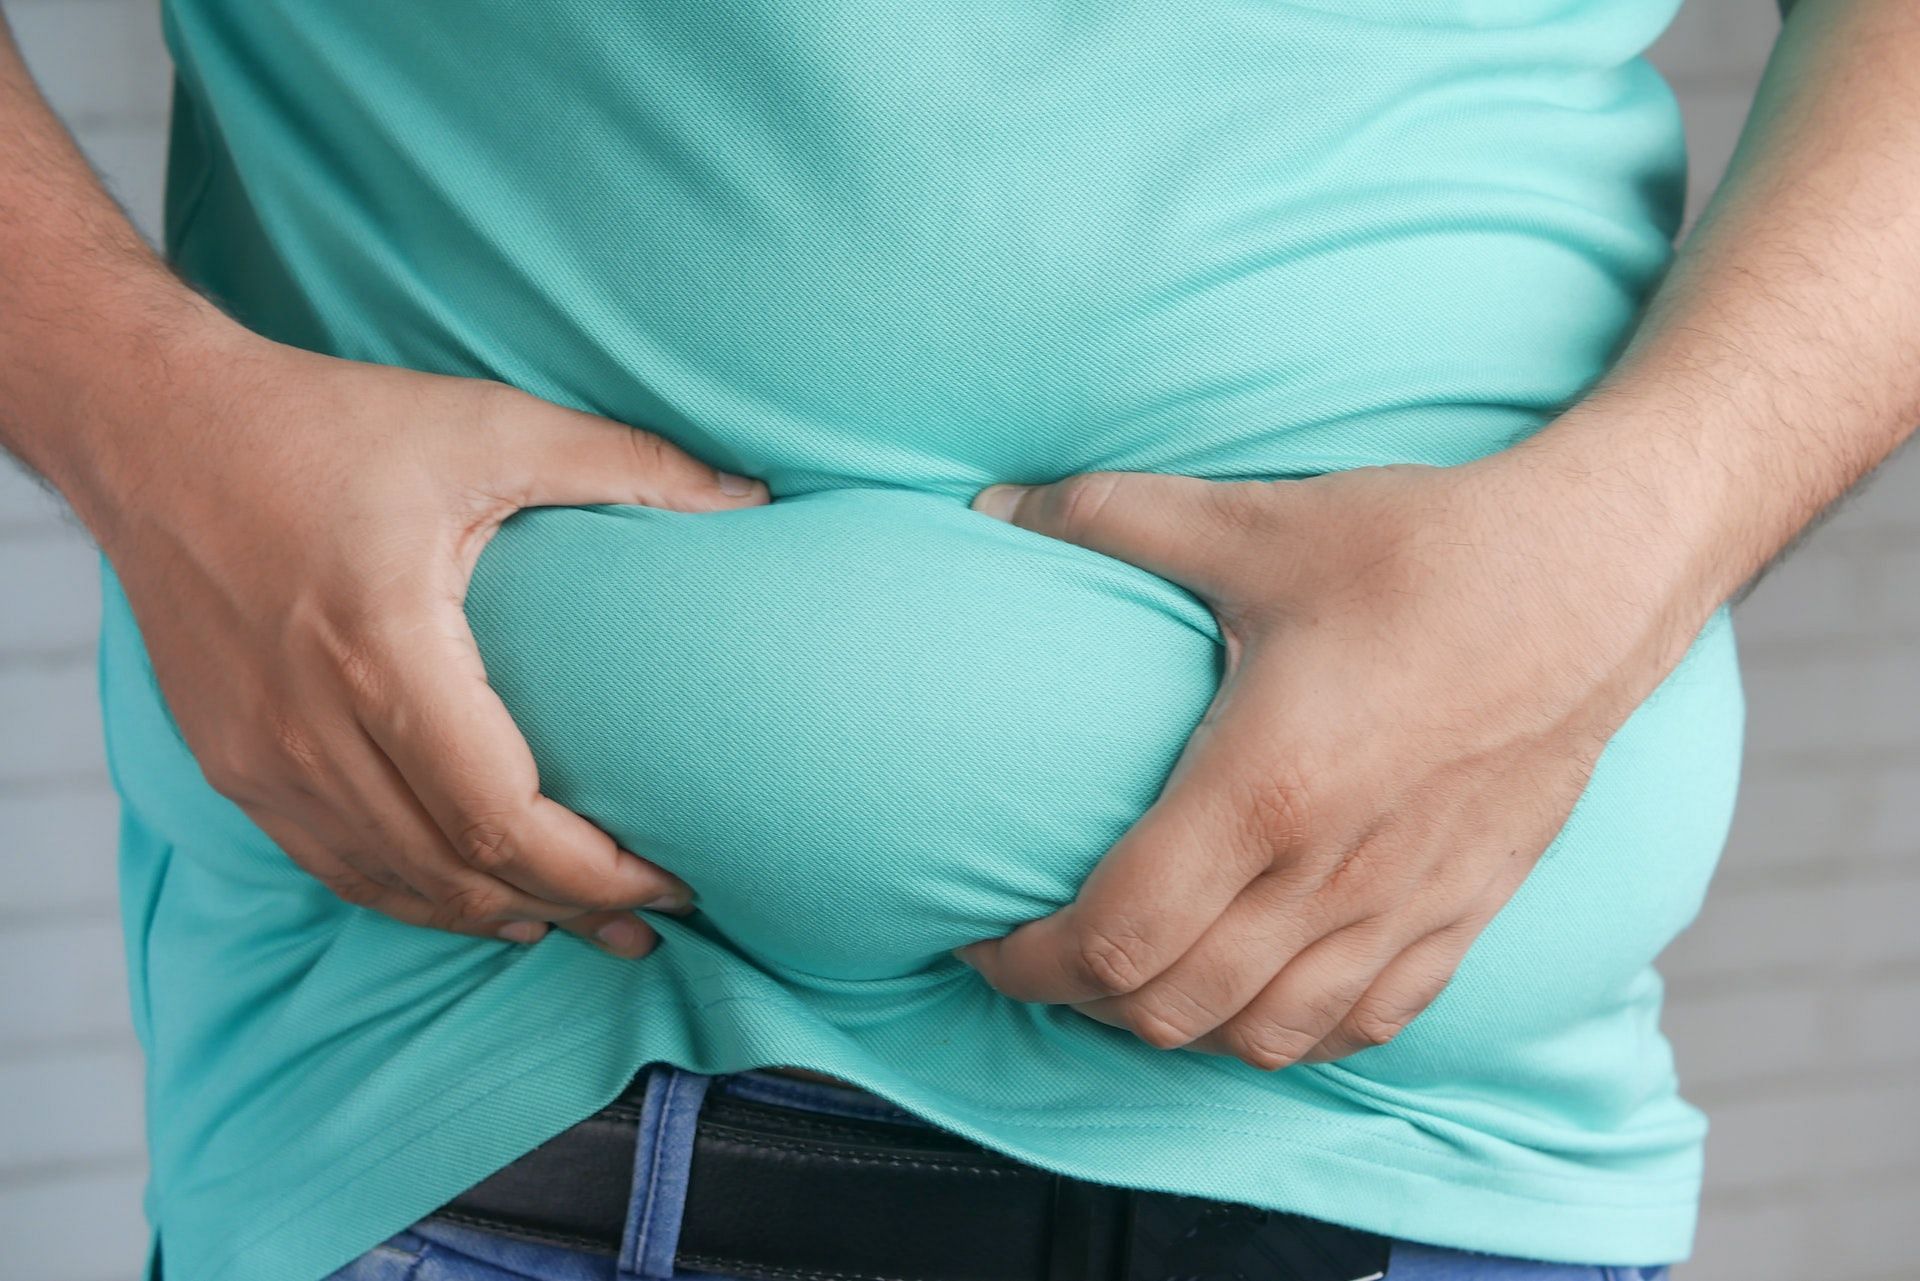 Obesity can weaken the pelvic floor muscles. (Photo via Pexels/Towfiqu barbhuiya)